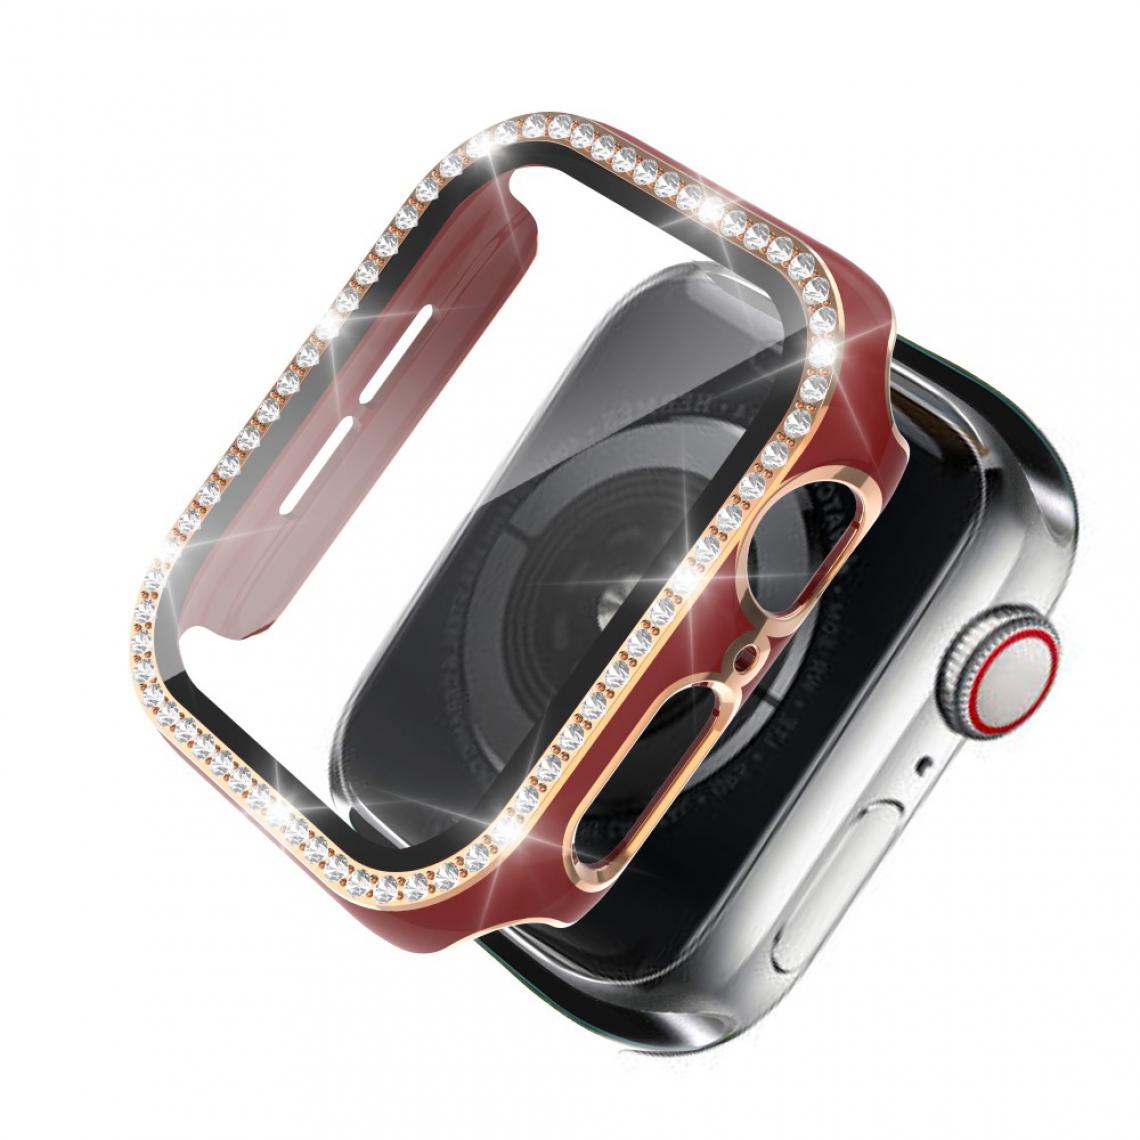 Other - Coque en TPU Cristal de galvanoplastie bicolore Or rouge pour votre Apple Watch 1/2/3 38mm - Accessoires bracelet connecté